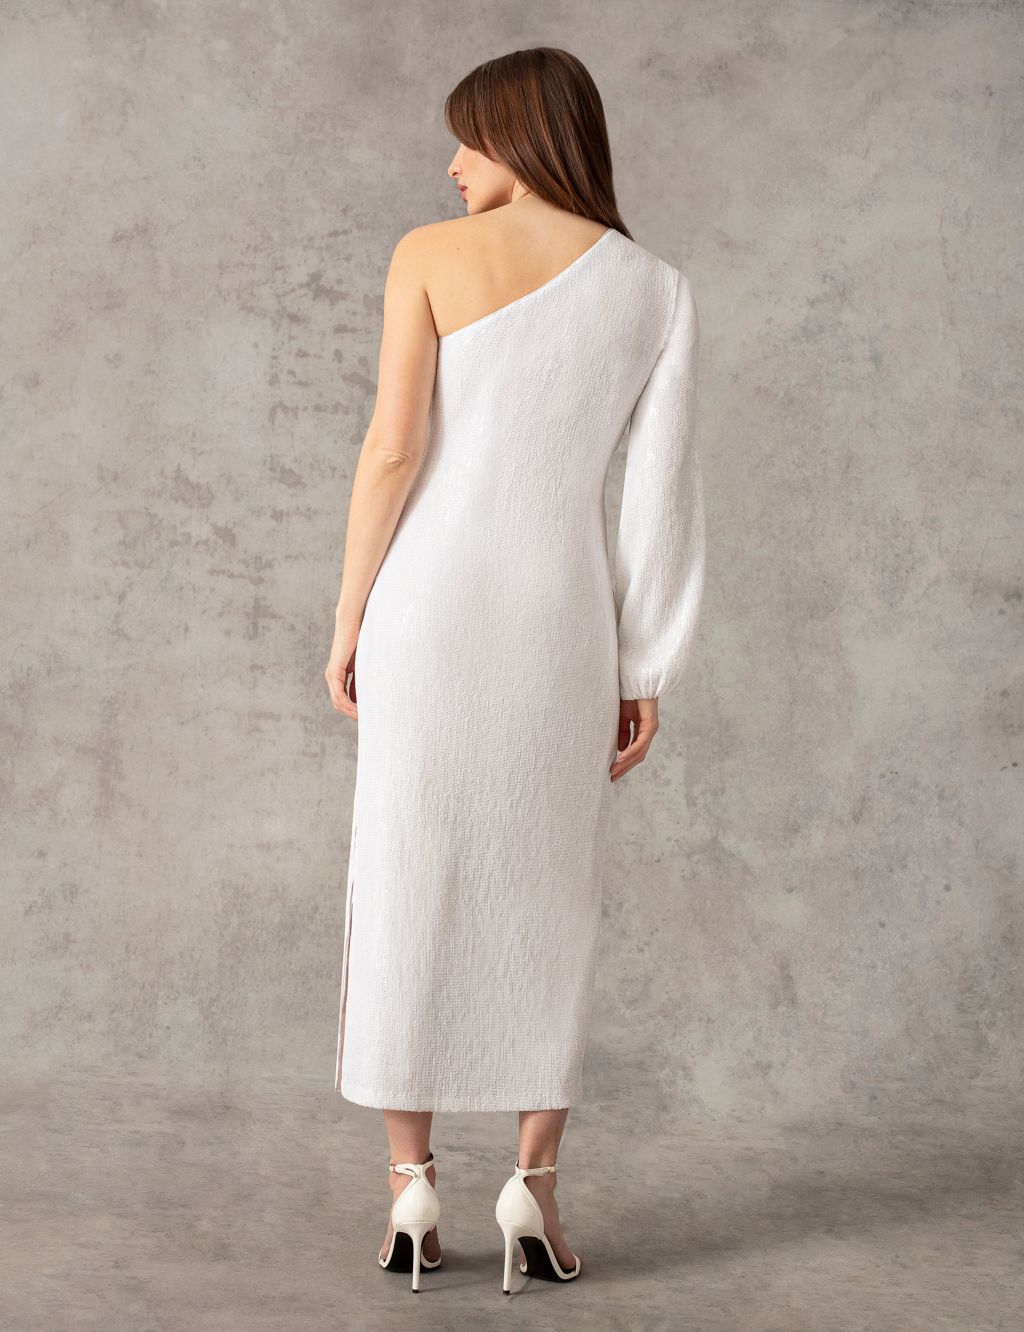 Sequin One Shoulder Midaxi Column Dress 4 of 9